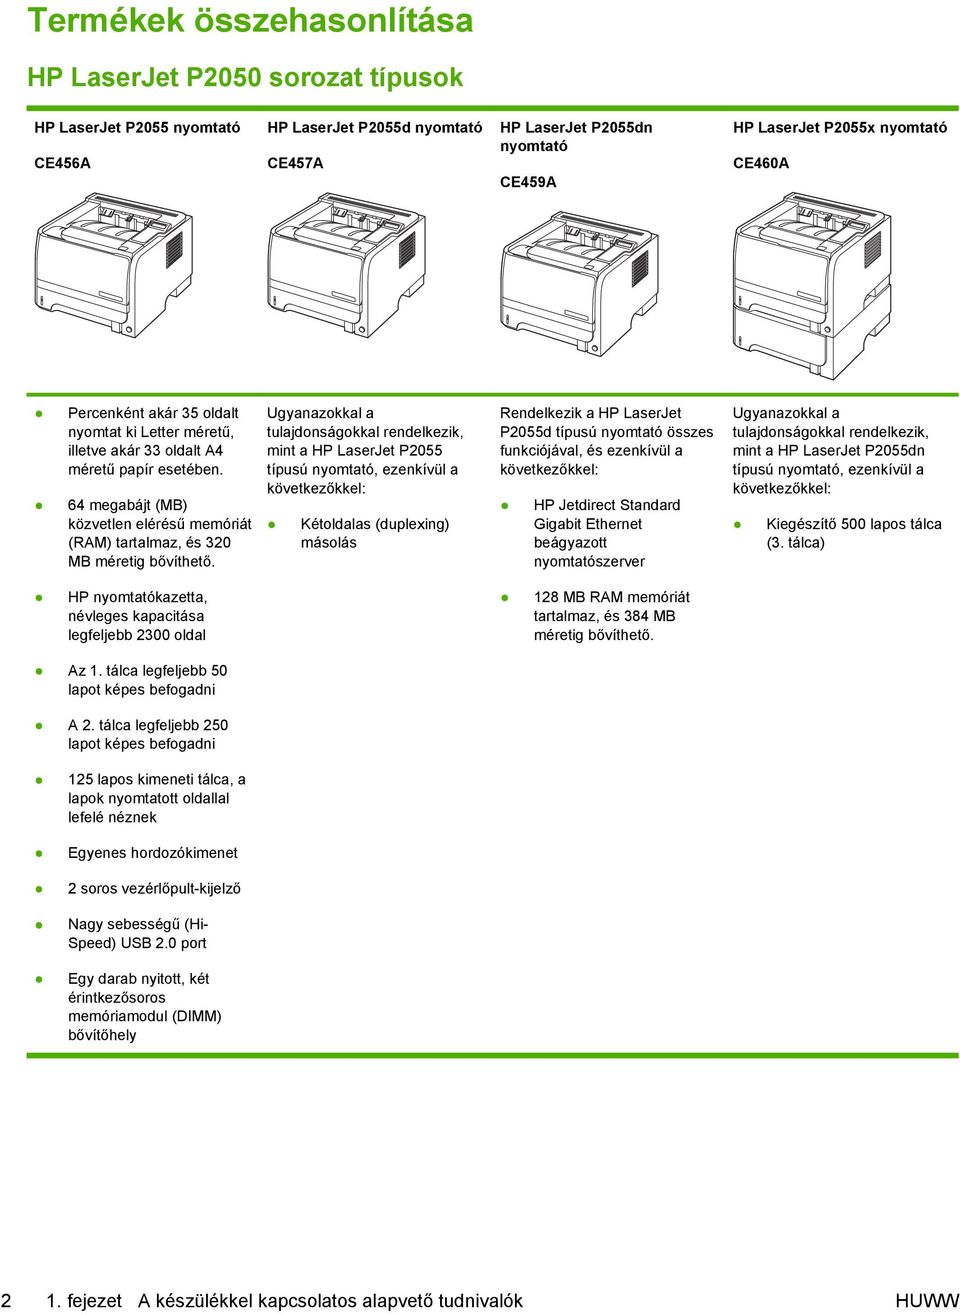 Ugyanazokkal a tulajdonságokkal rendelkezik, mint a HP LaserJet P2055 típusú nyomtató, ezenkívül a következőkkel: Kétoldalas (duplexing) másolás Rendelkezik a HP LaserJet P2055d típusú nyomtató